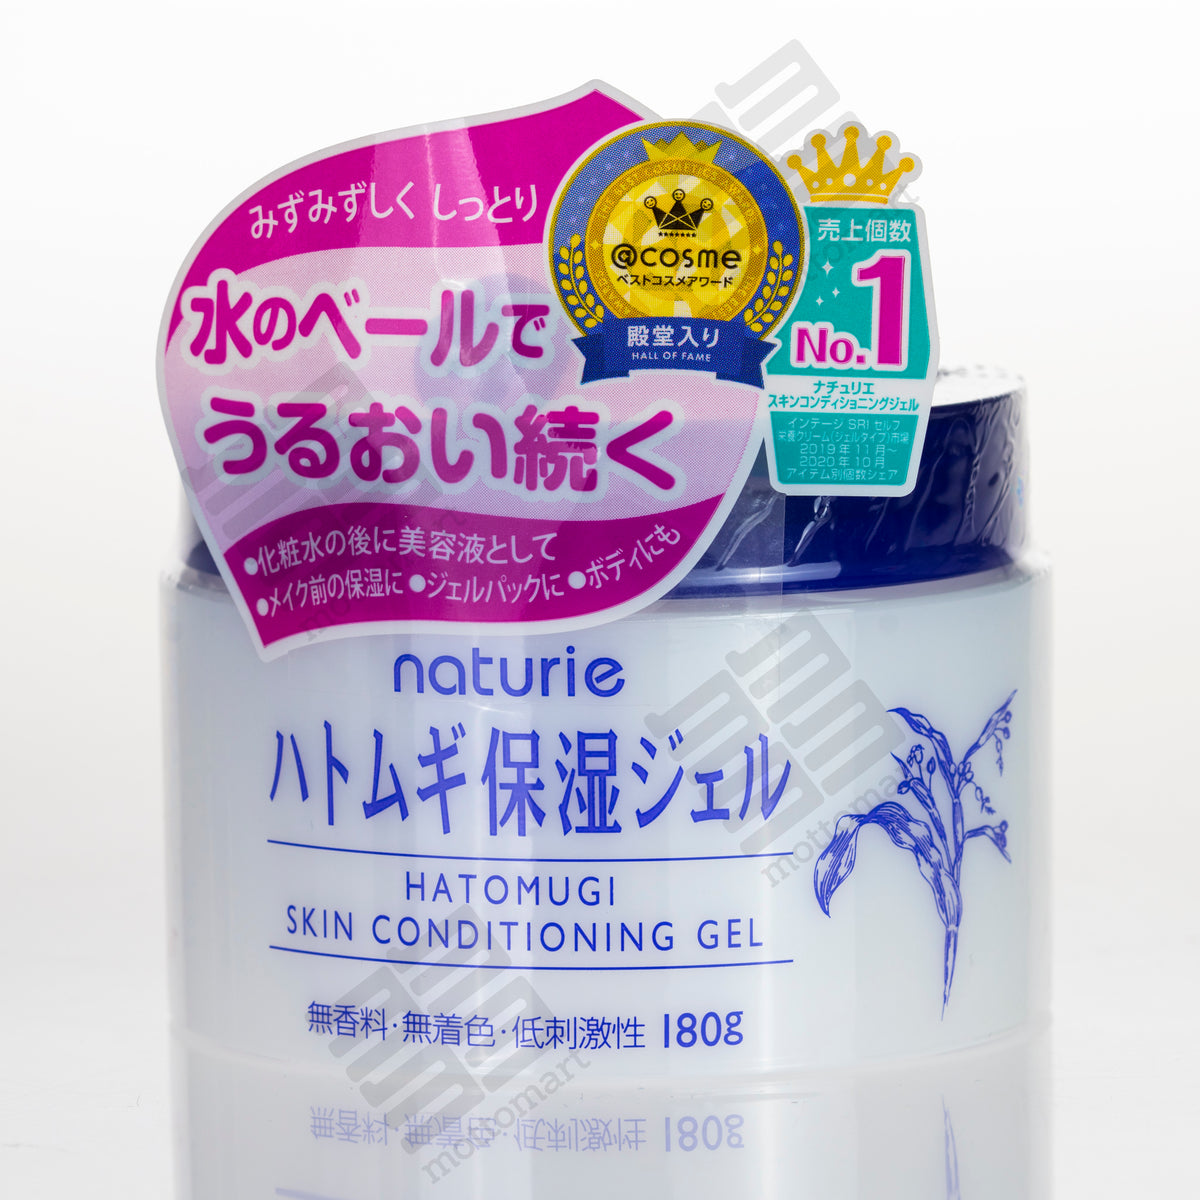 NATURIE Hatomugi Skin Conditioning Gel (180g) ナチュリエ ハトムギ保湿ジェル – Mottomart